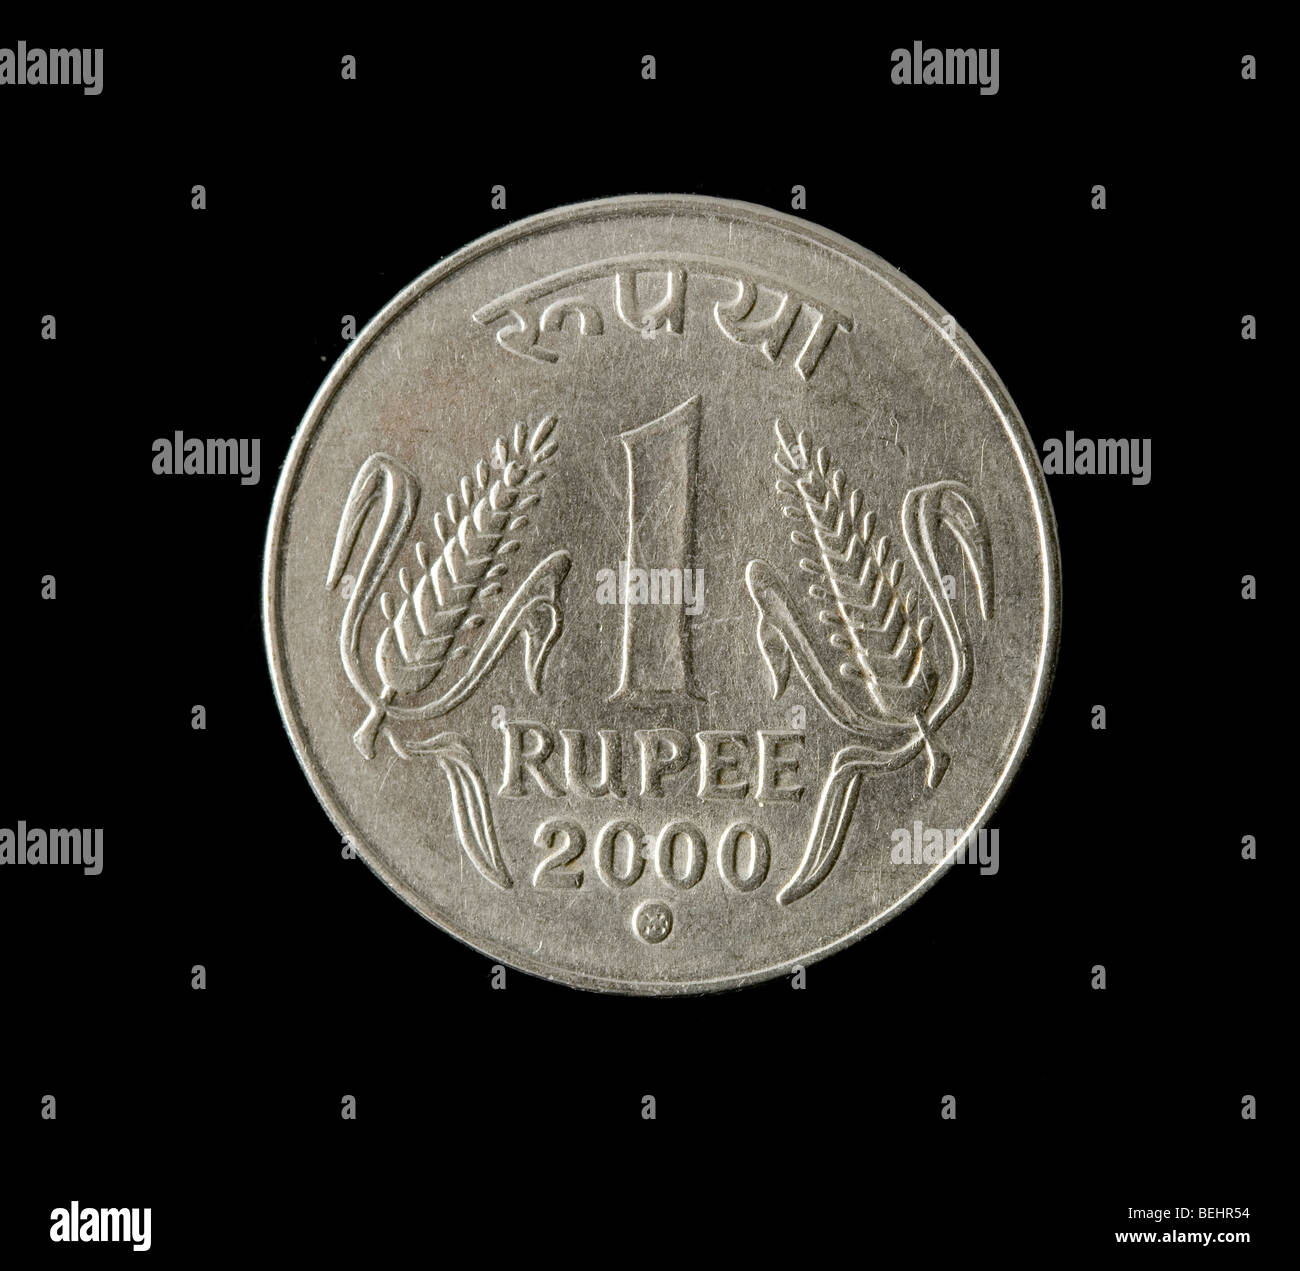 1 Rupee Coin Clipart Border